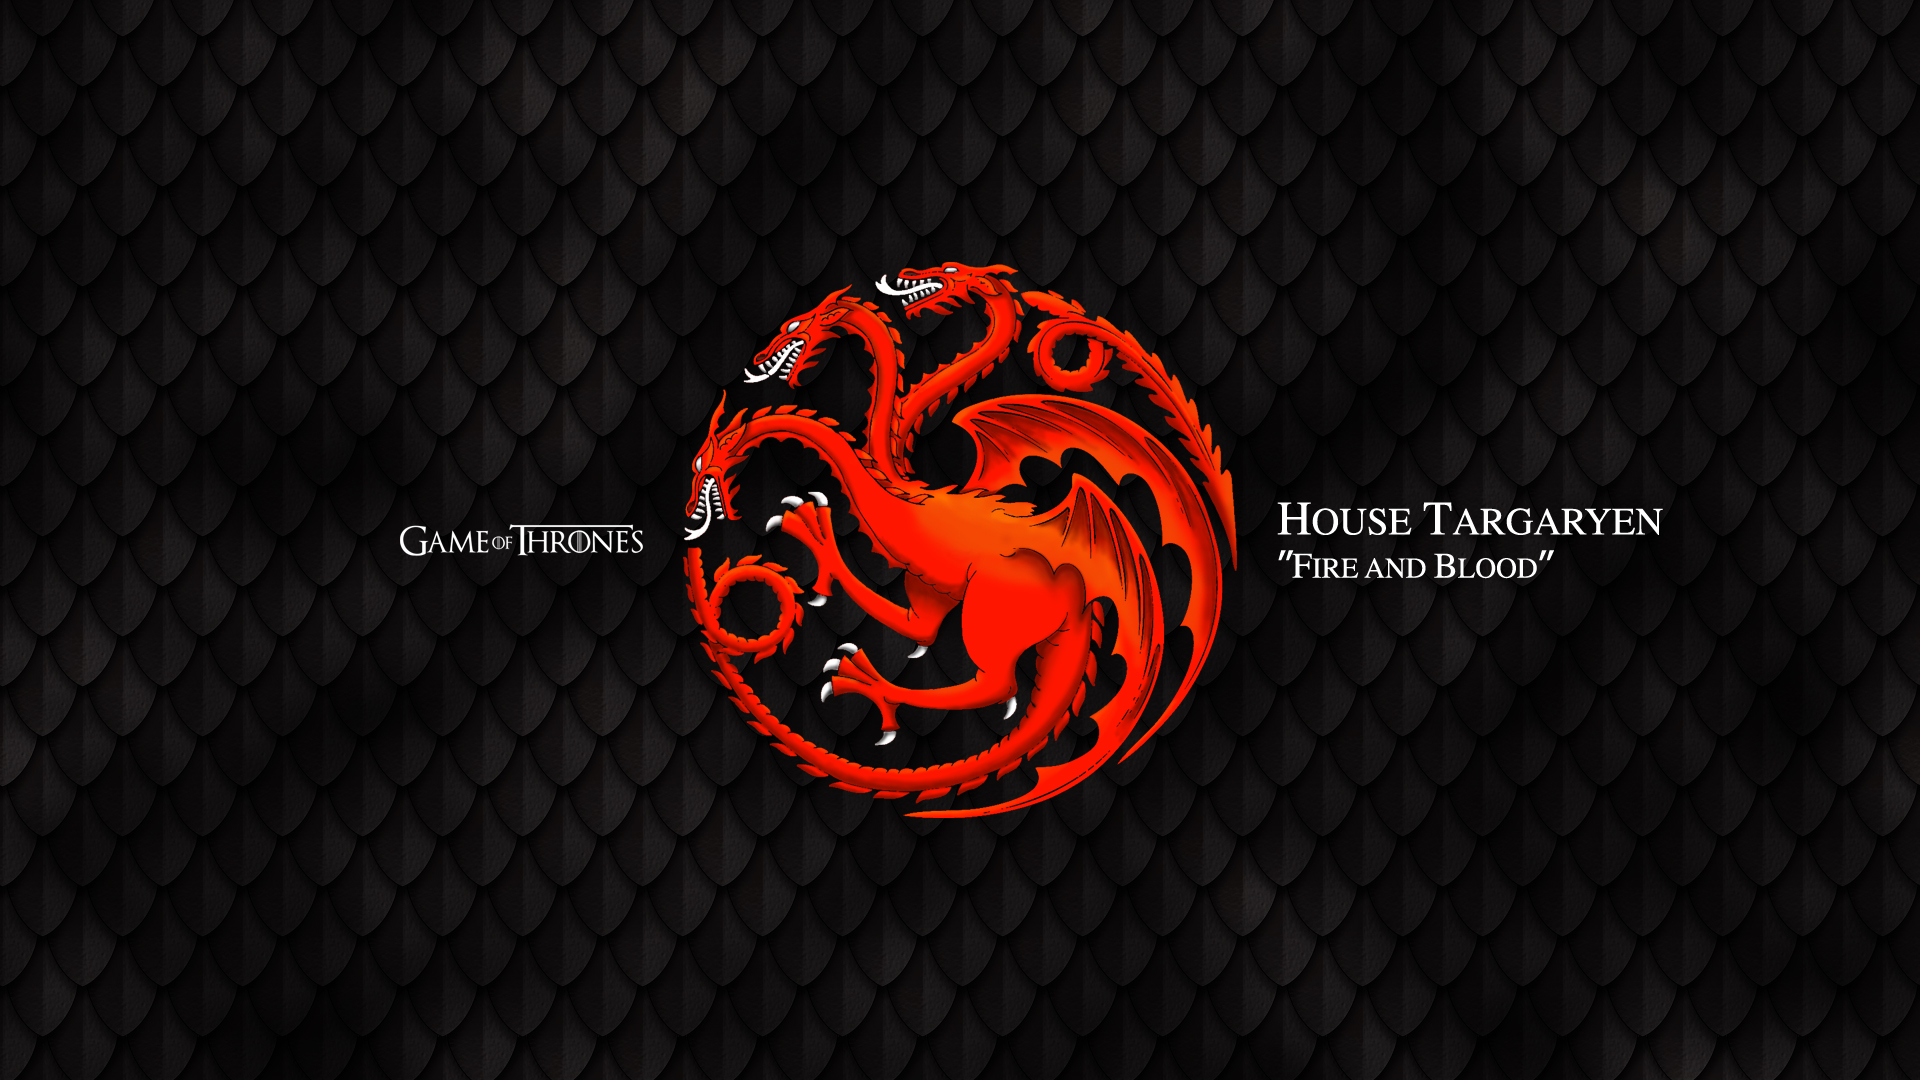 GoT House Targaryen by NYMEZIDE on